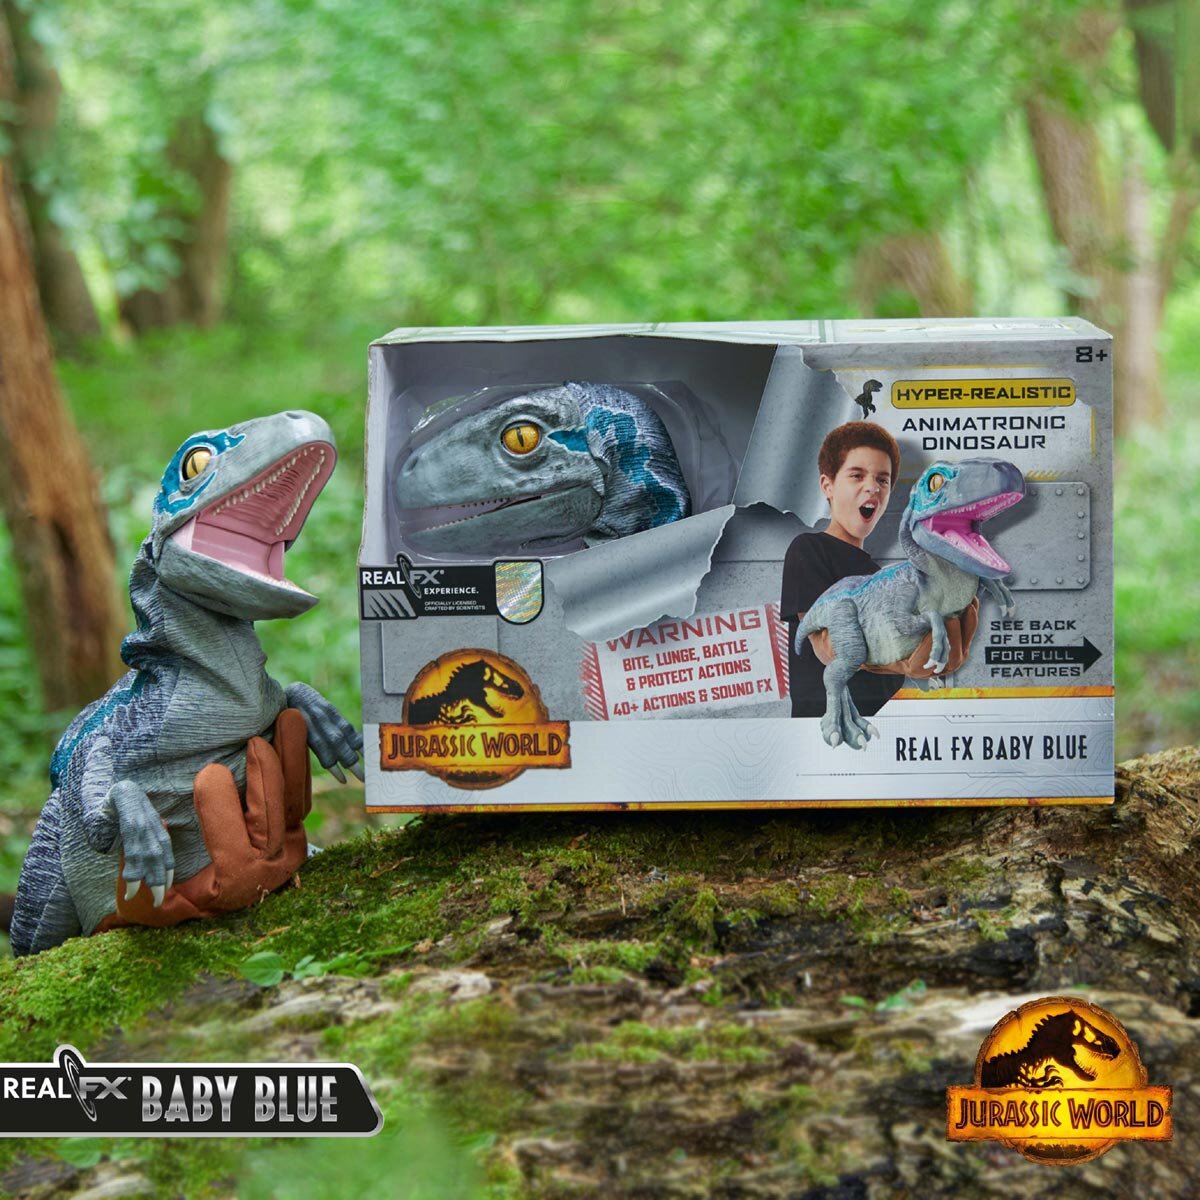 Buy Animatronic Dinosaur Back of Box Image at Costco.co.uk